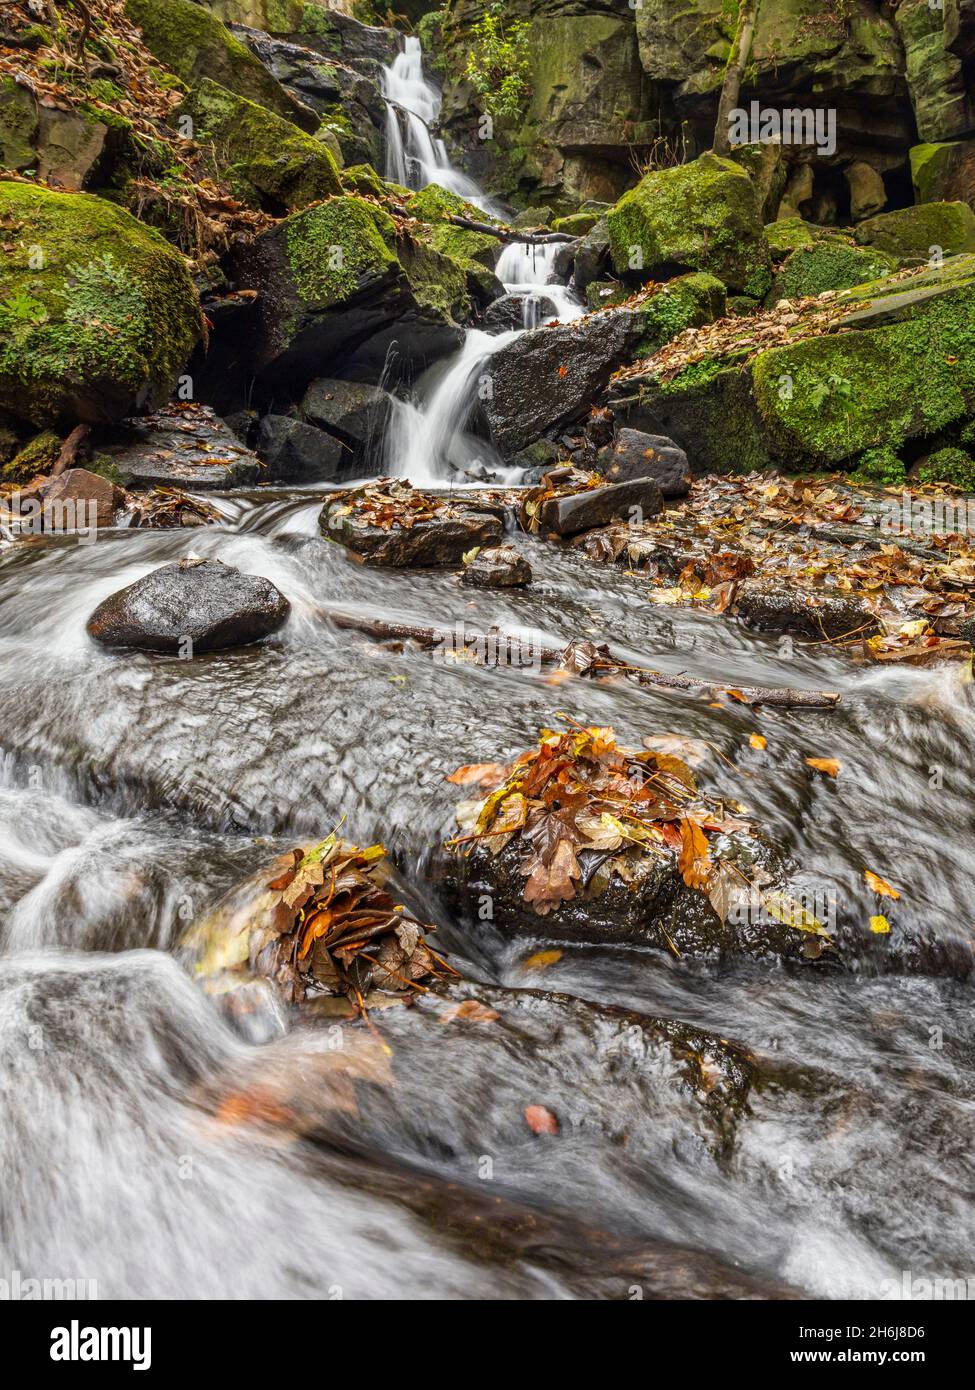 Herbst bei den Lumsdale Falls, gelegen entlang des Lumsdale Valley und nur einen kurzen Spaziergang von Matlock in Derbyshire entfernt, am Rande des Peak District National Park. Stockfoto